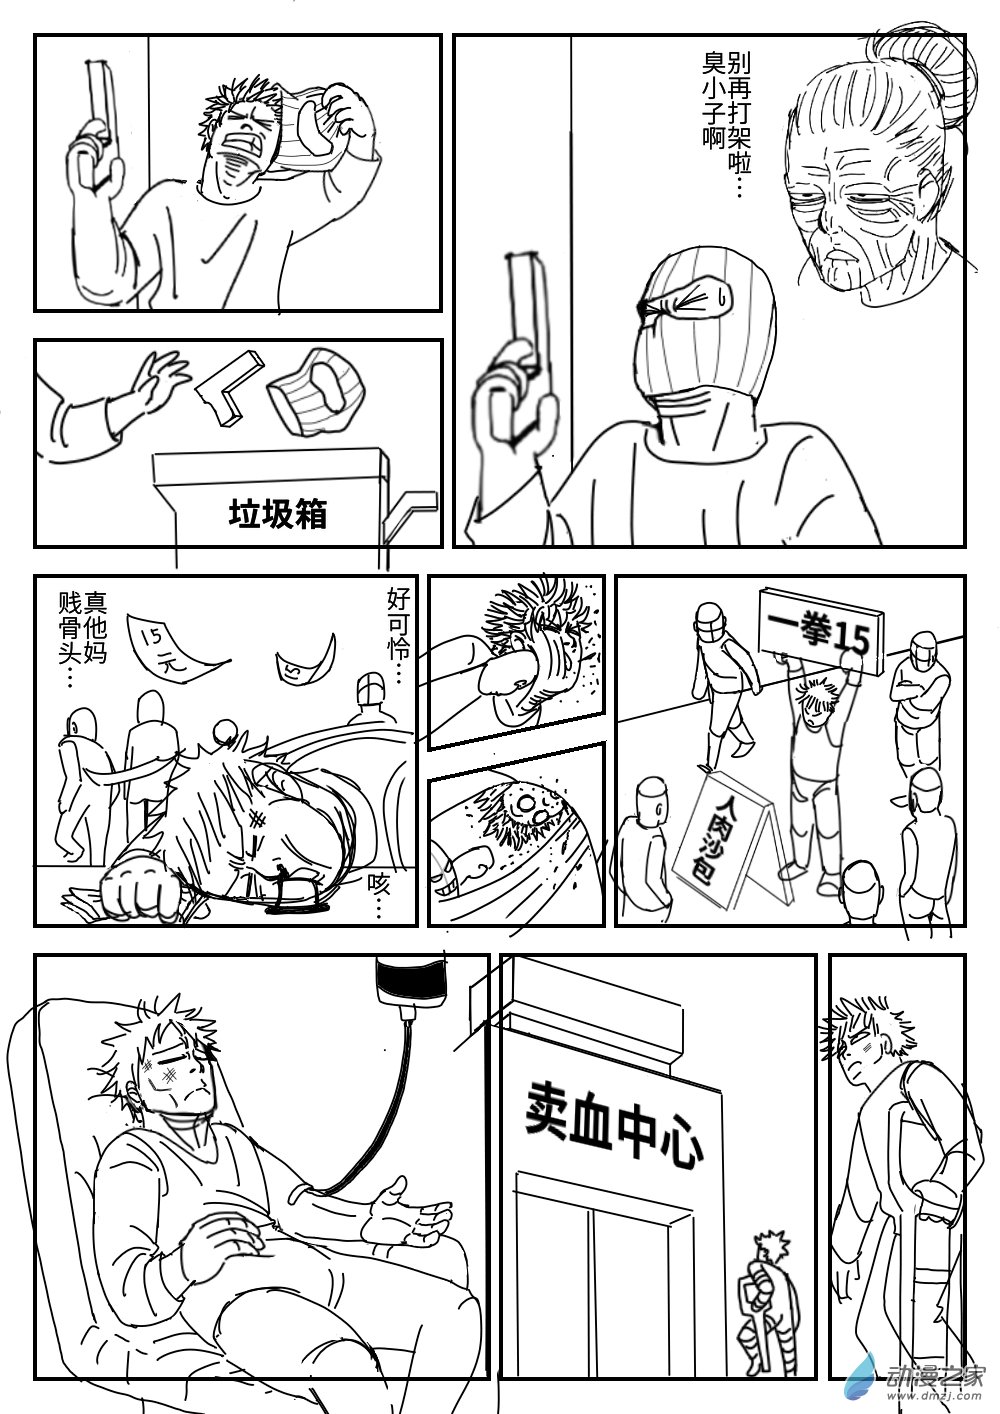 K神的短篇漫畫集 - 04 越獄 - 5